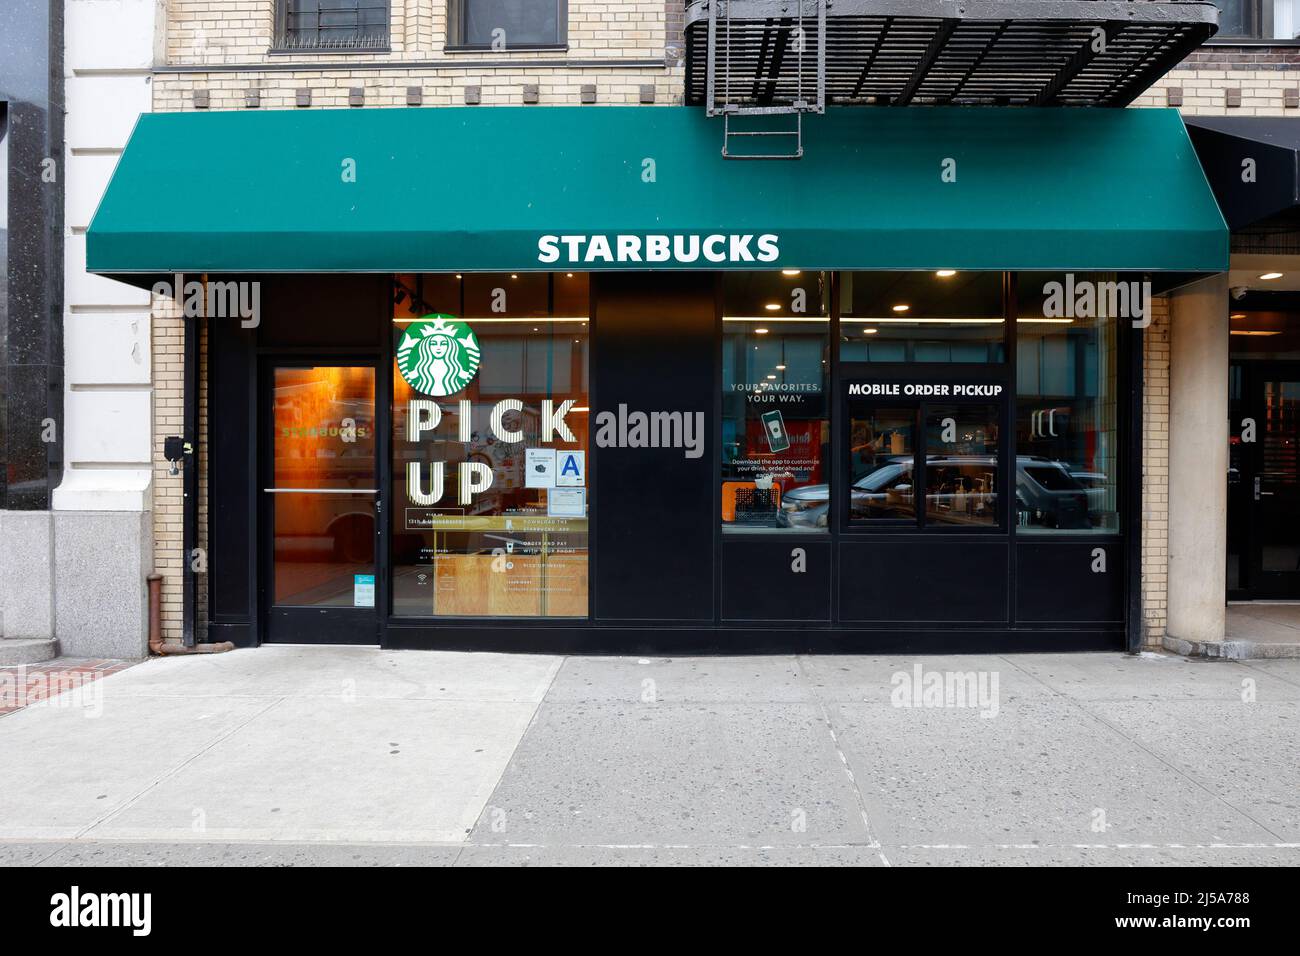 Starbucks Pickup, 111 University PL, New York, NYC Foto von einem sitzlosen Coffee Shop, optimiert für digitale Bestellungen unterwegs. Stockfoto